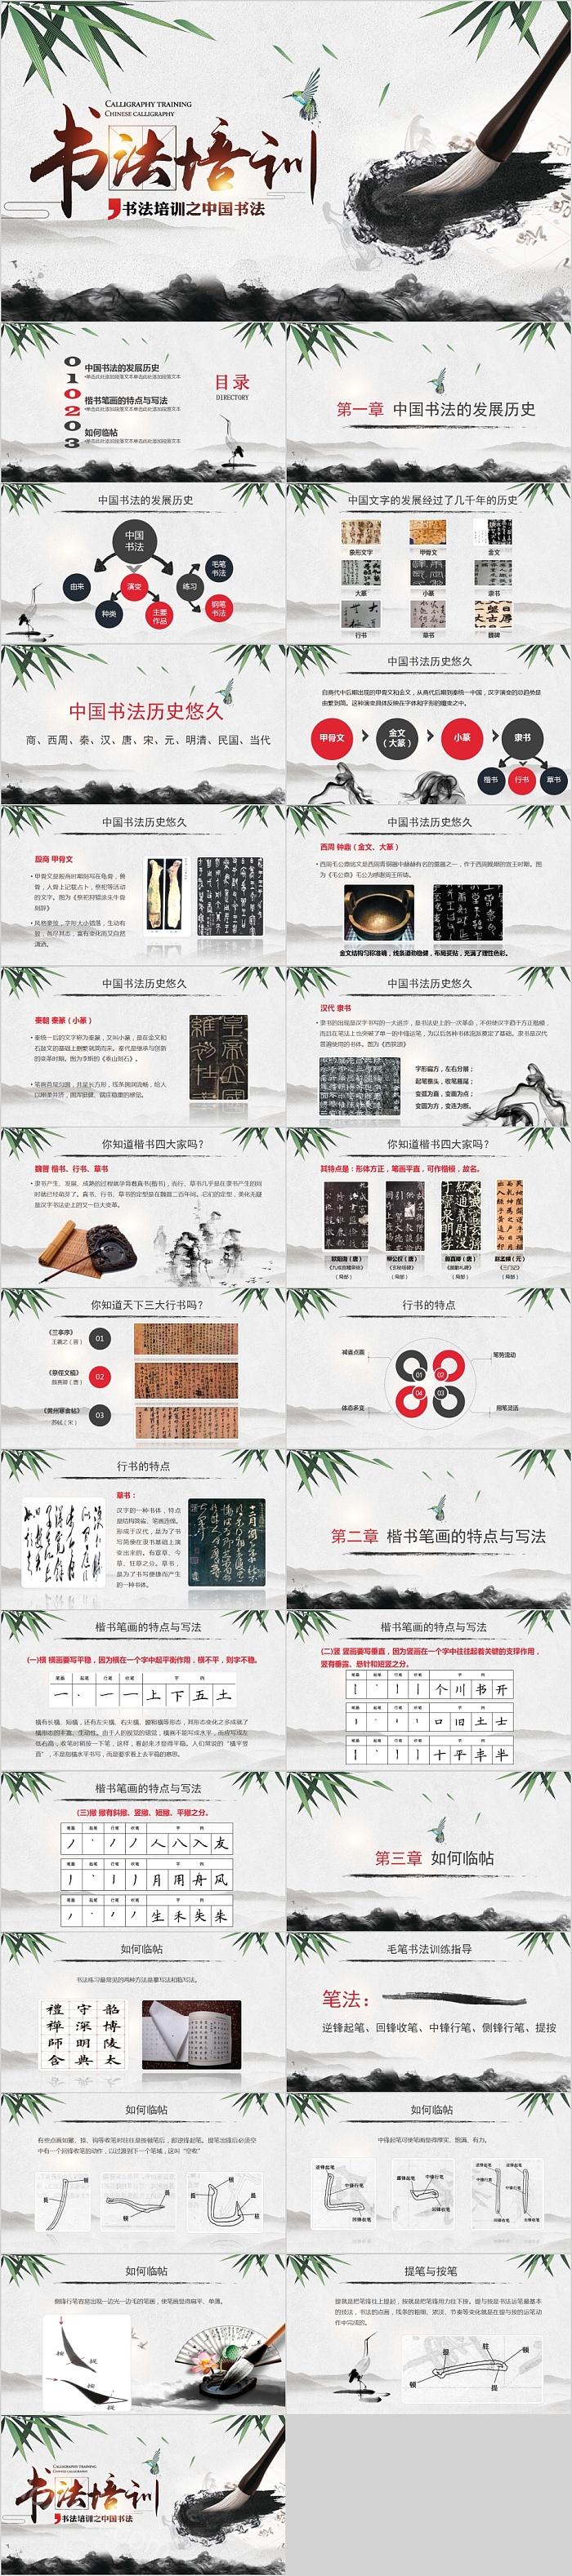 中国风水墨书法培训之中国书法PPT模板